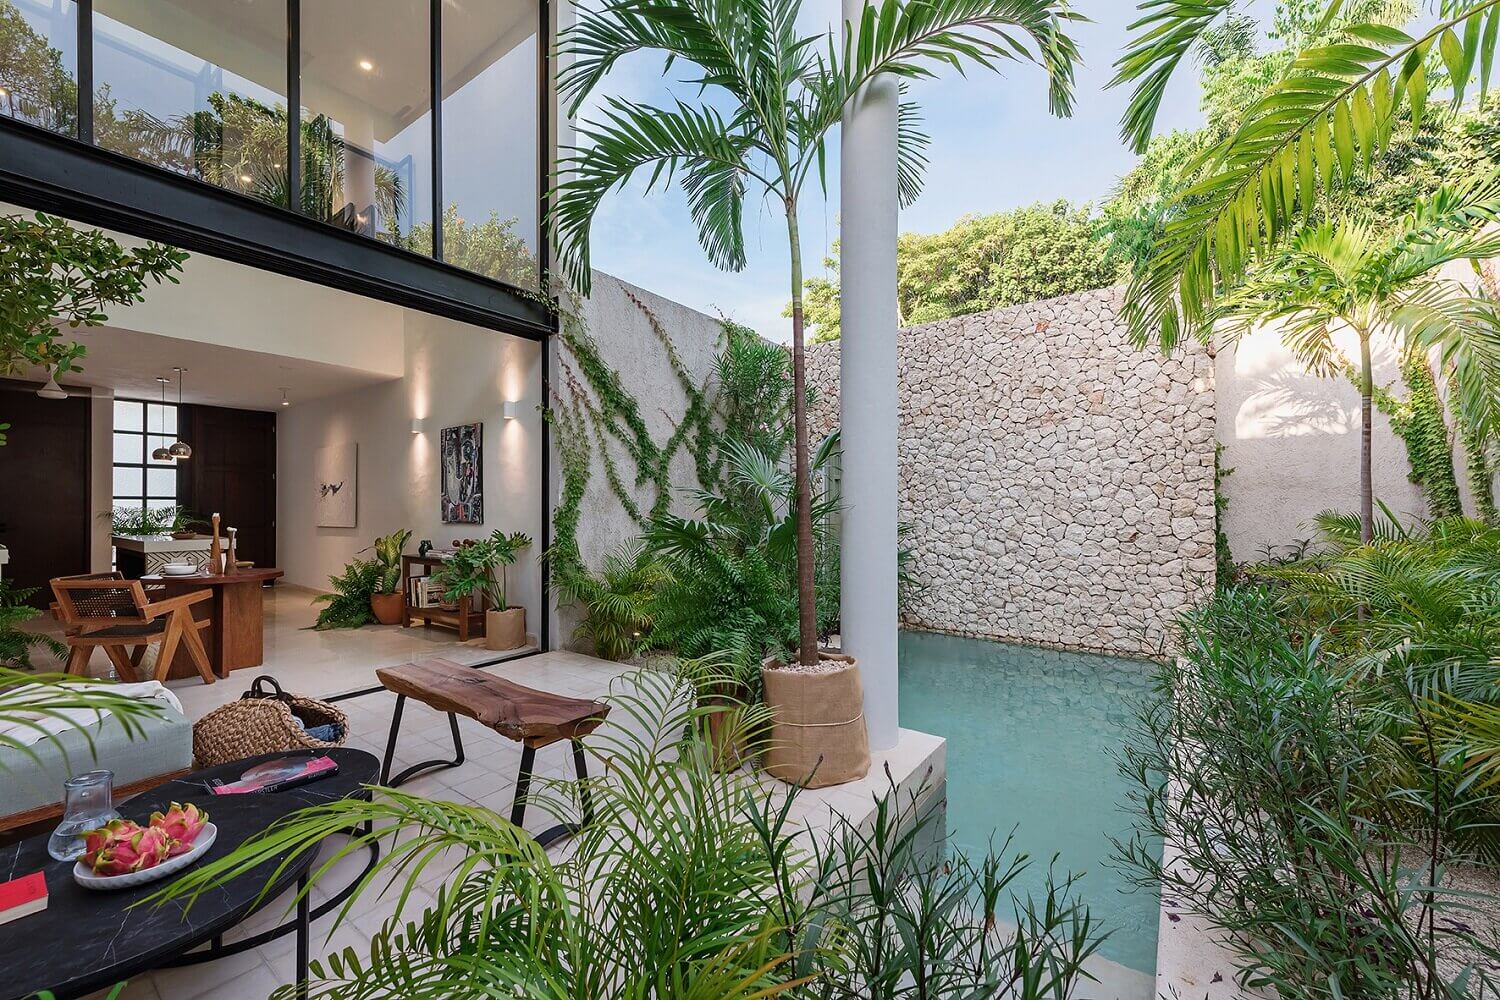 CasaHannah AnArchitecturalVillainMexico TheNordroom1 Casa Hannah | An Architectural Indoor/Outdoor Villa in Mexico